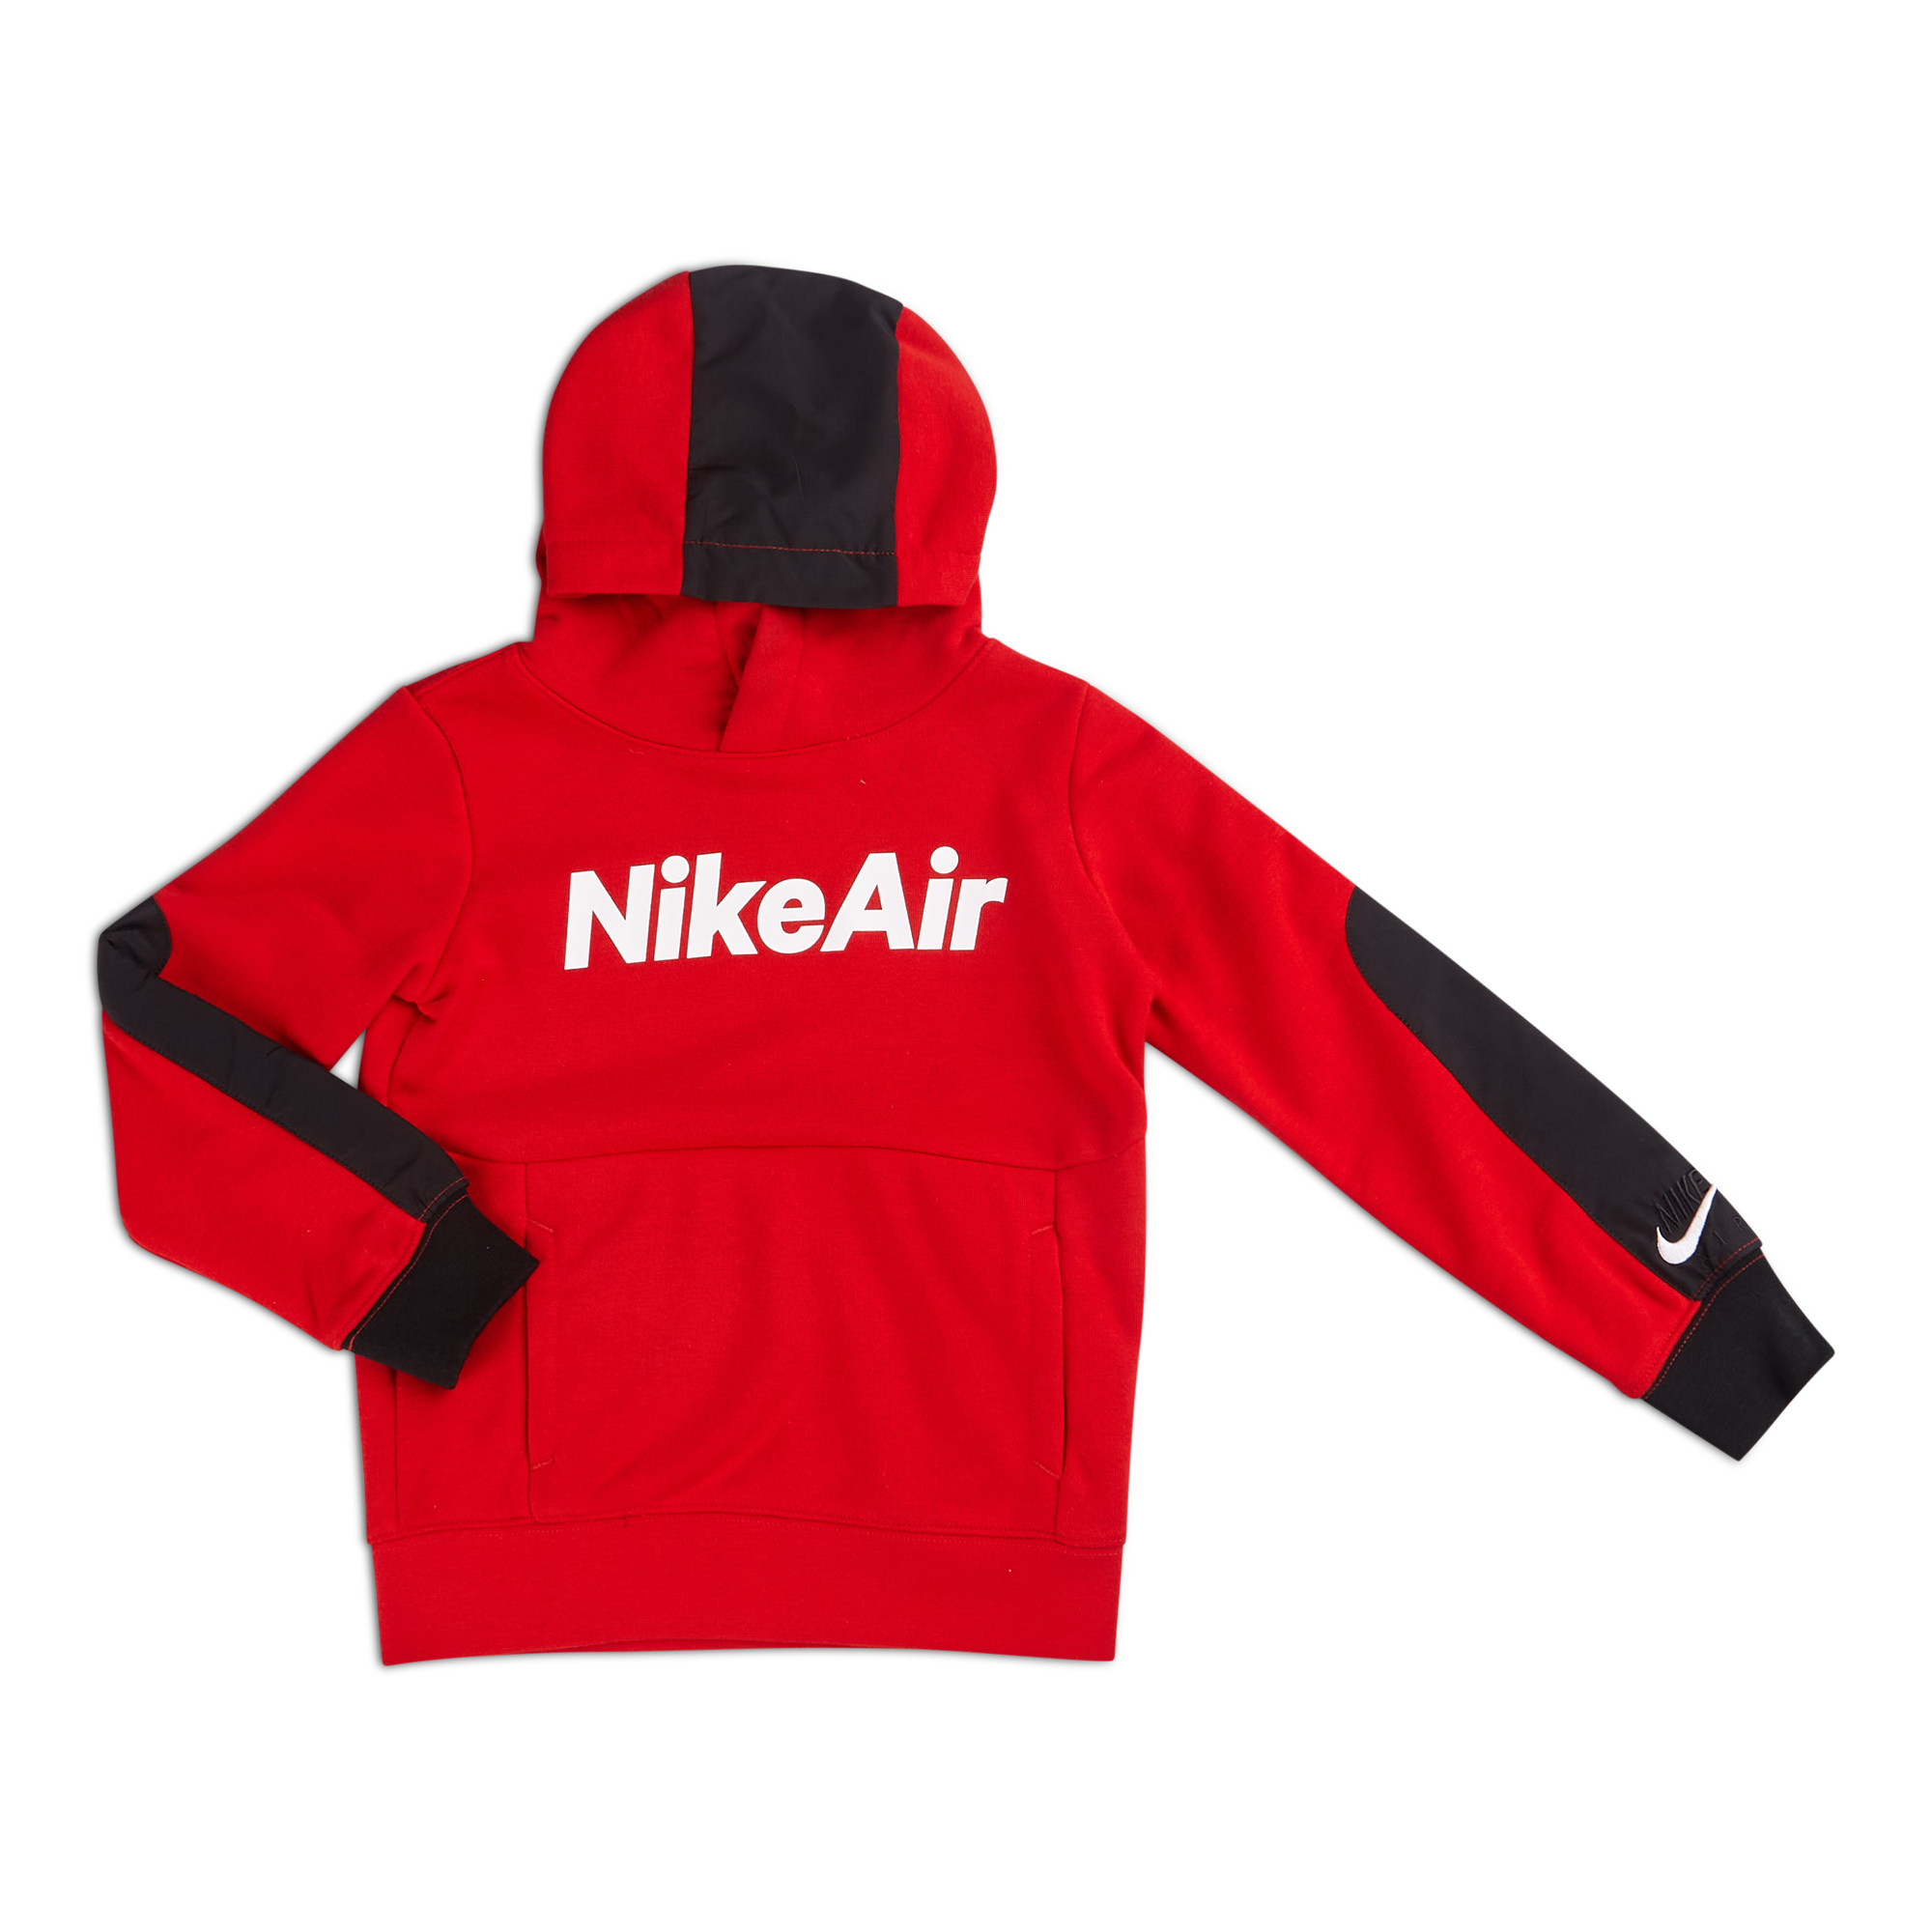 Nike Air @ Footlocker